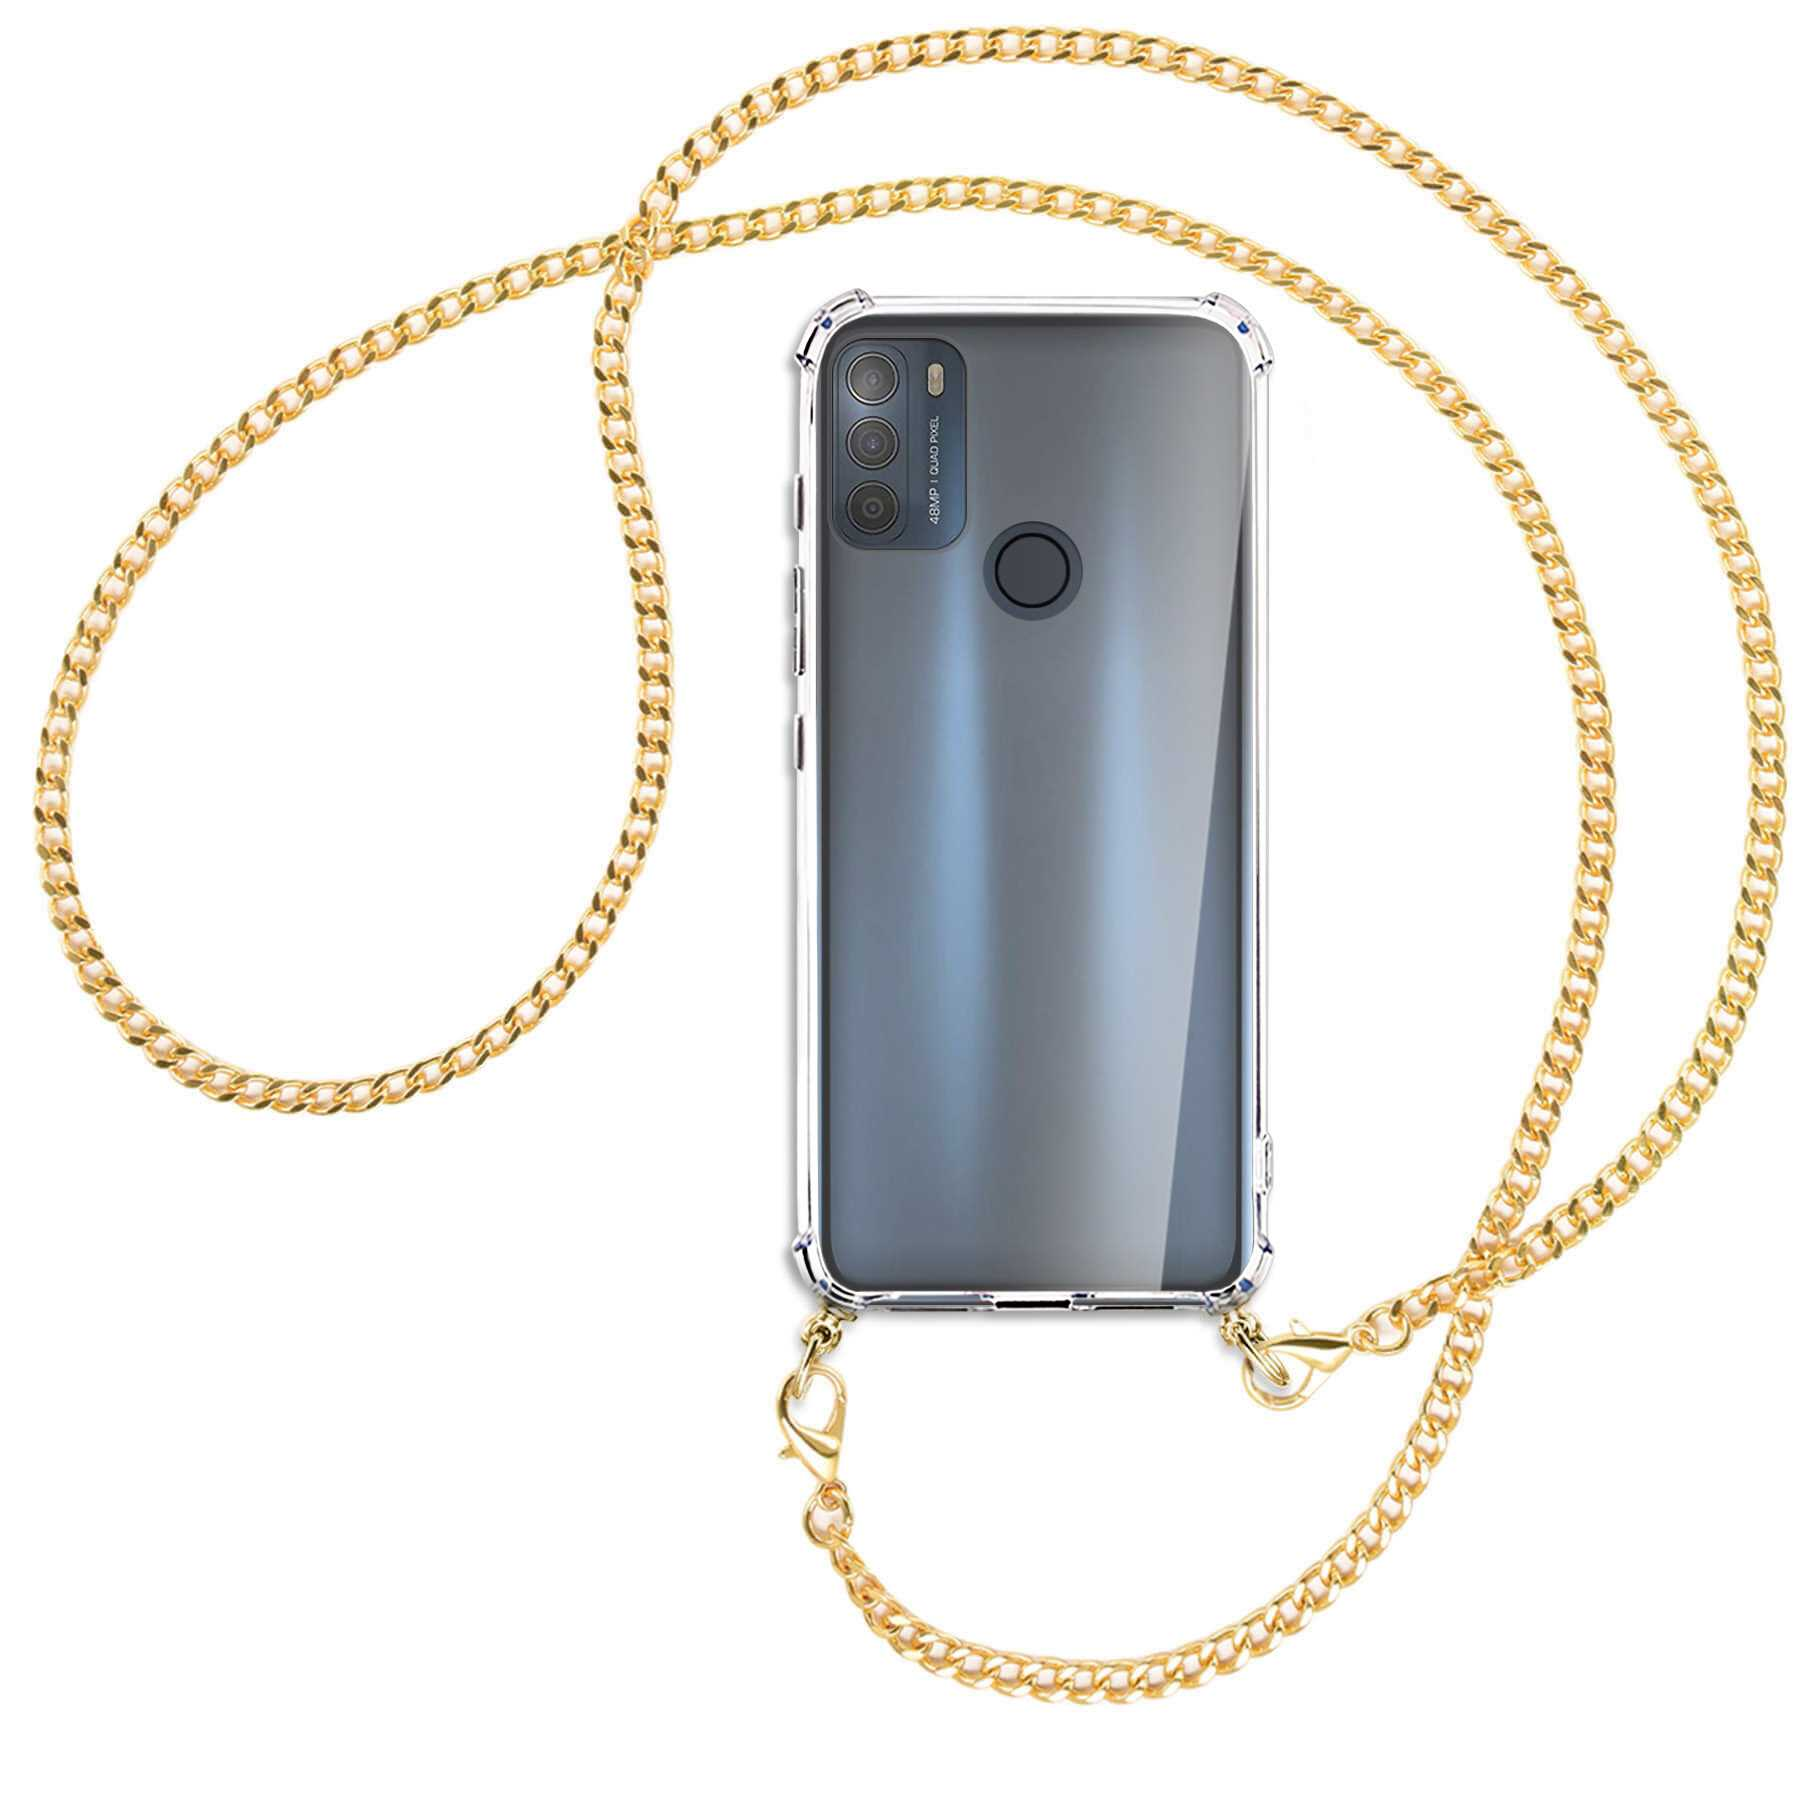 MTB MORE ENERGY Umhänge-Hülle Kette Metallkette, Motorola, (gold) Backcover, mit Moto G50